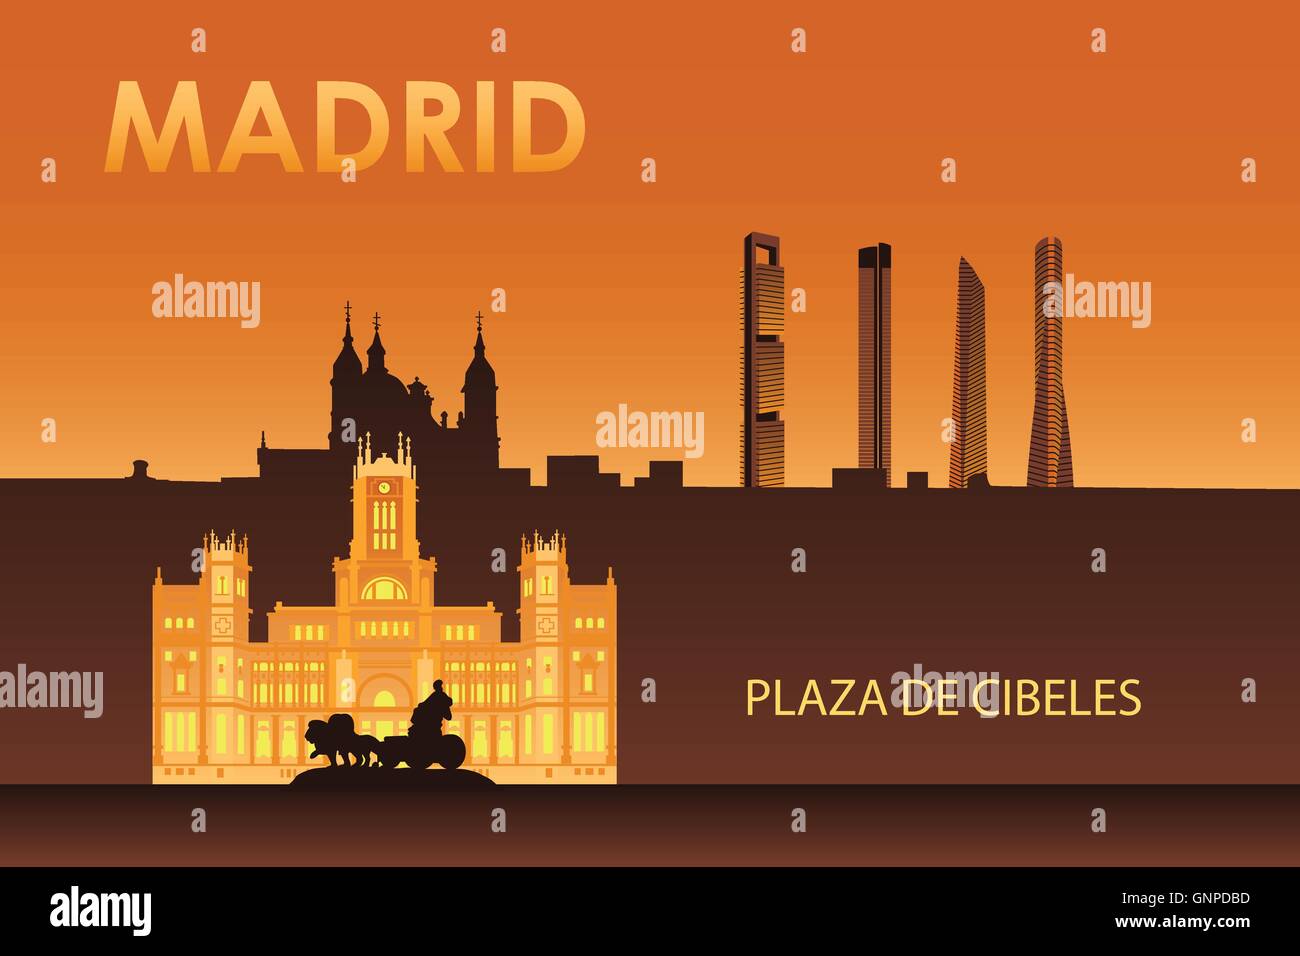 Madrid Sehenswürdigkeiten der Stadt in der Nacht Vektor-Illustration. Kybele-Palast. Stock Vektor